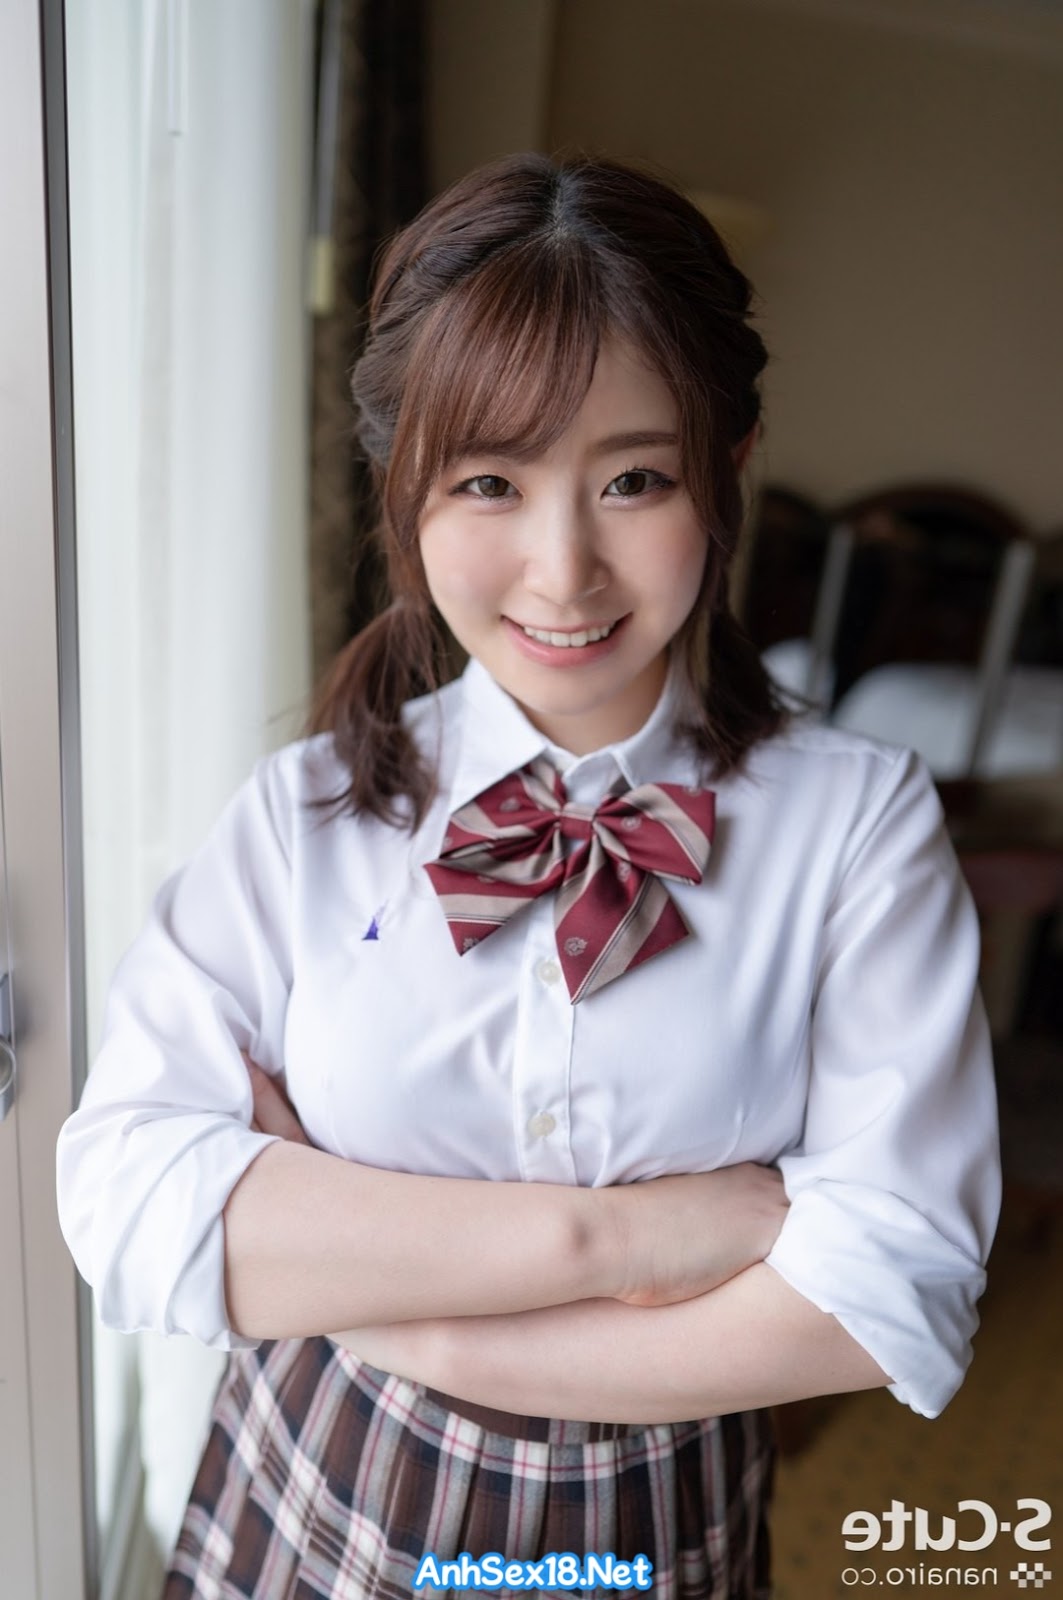 AnhSex18.Net | Hình ảnh idol Ena Satsuki xinh đẹp